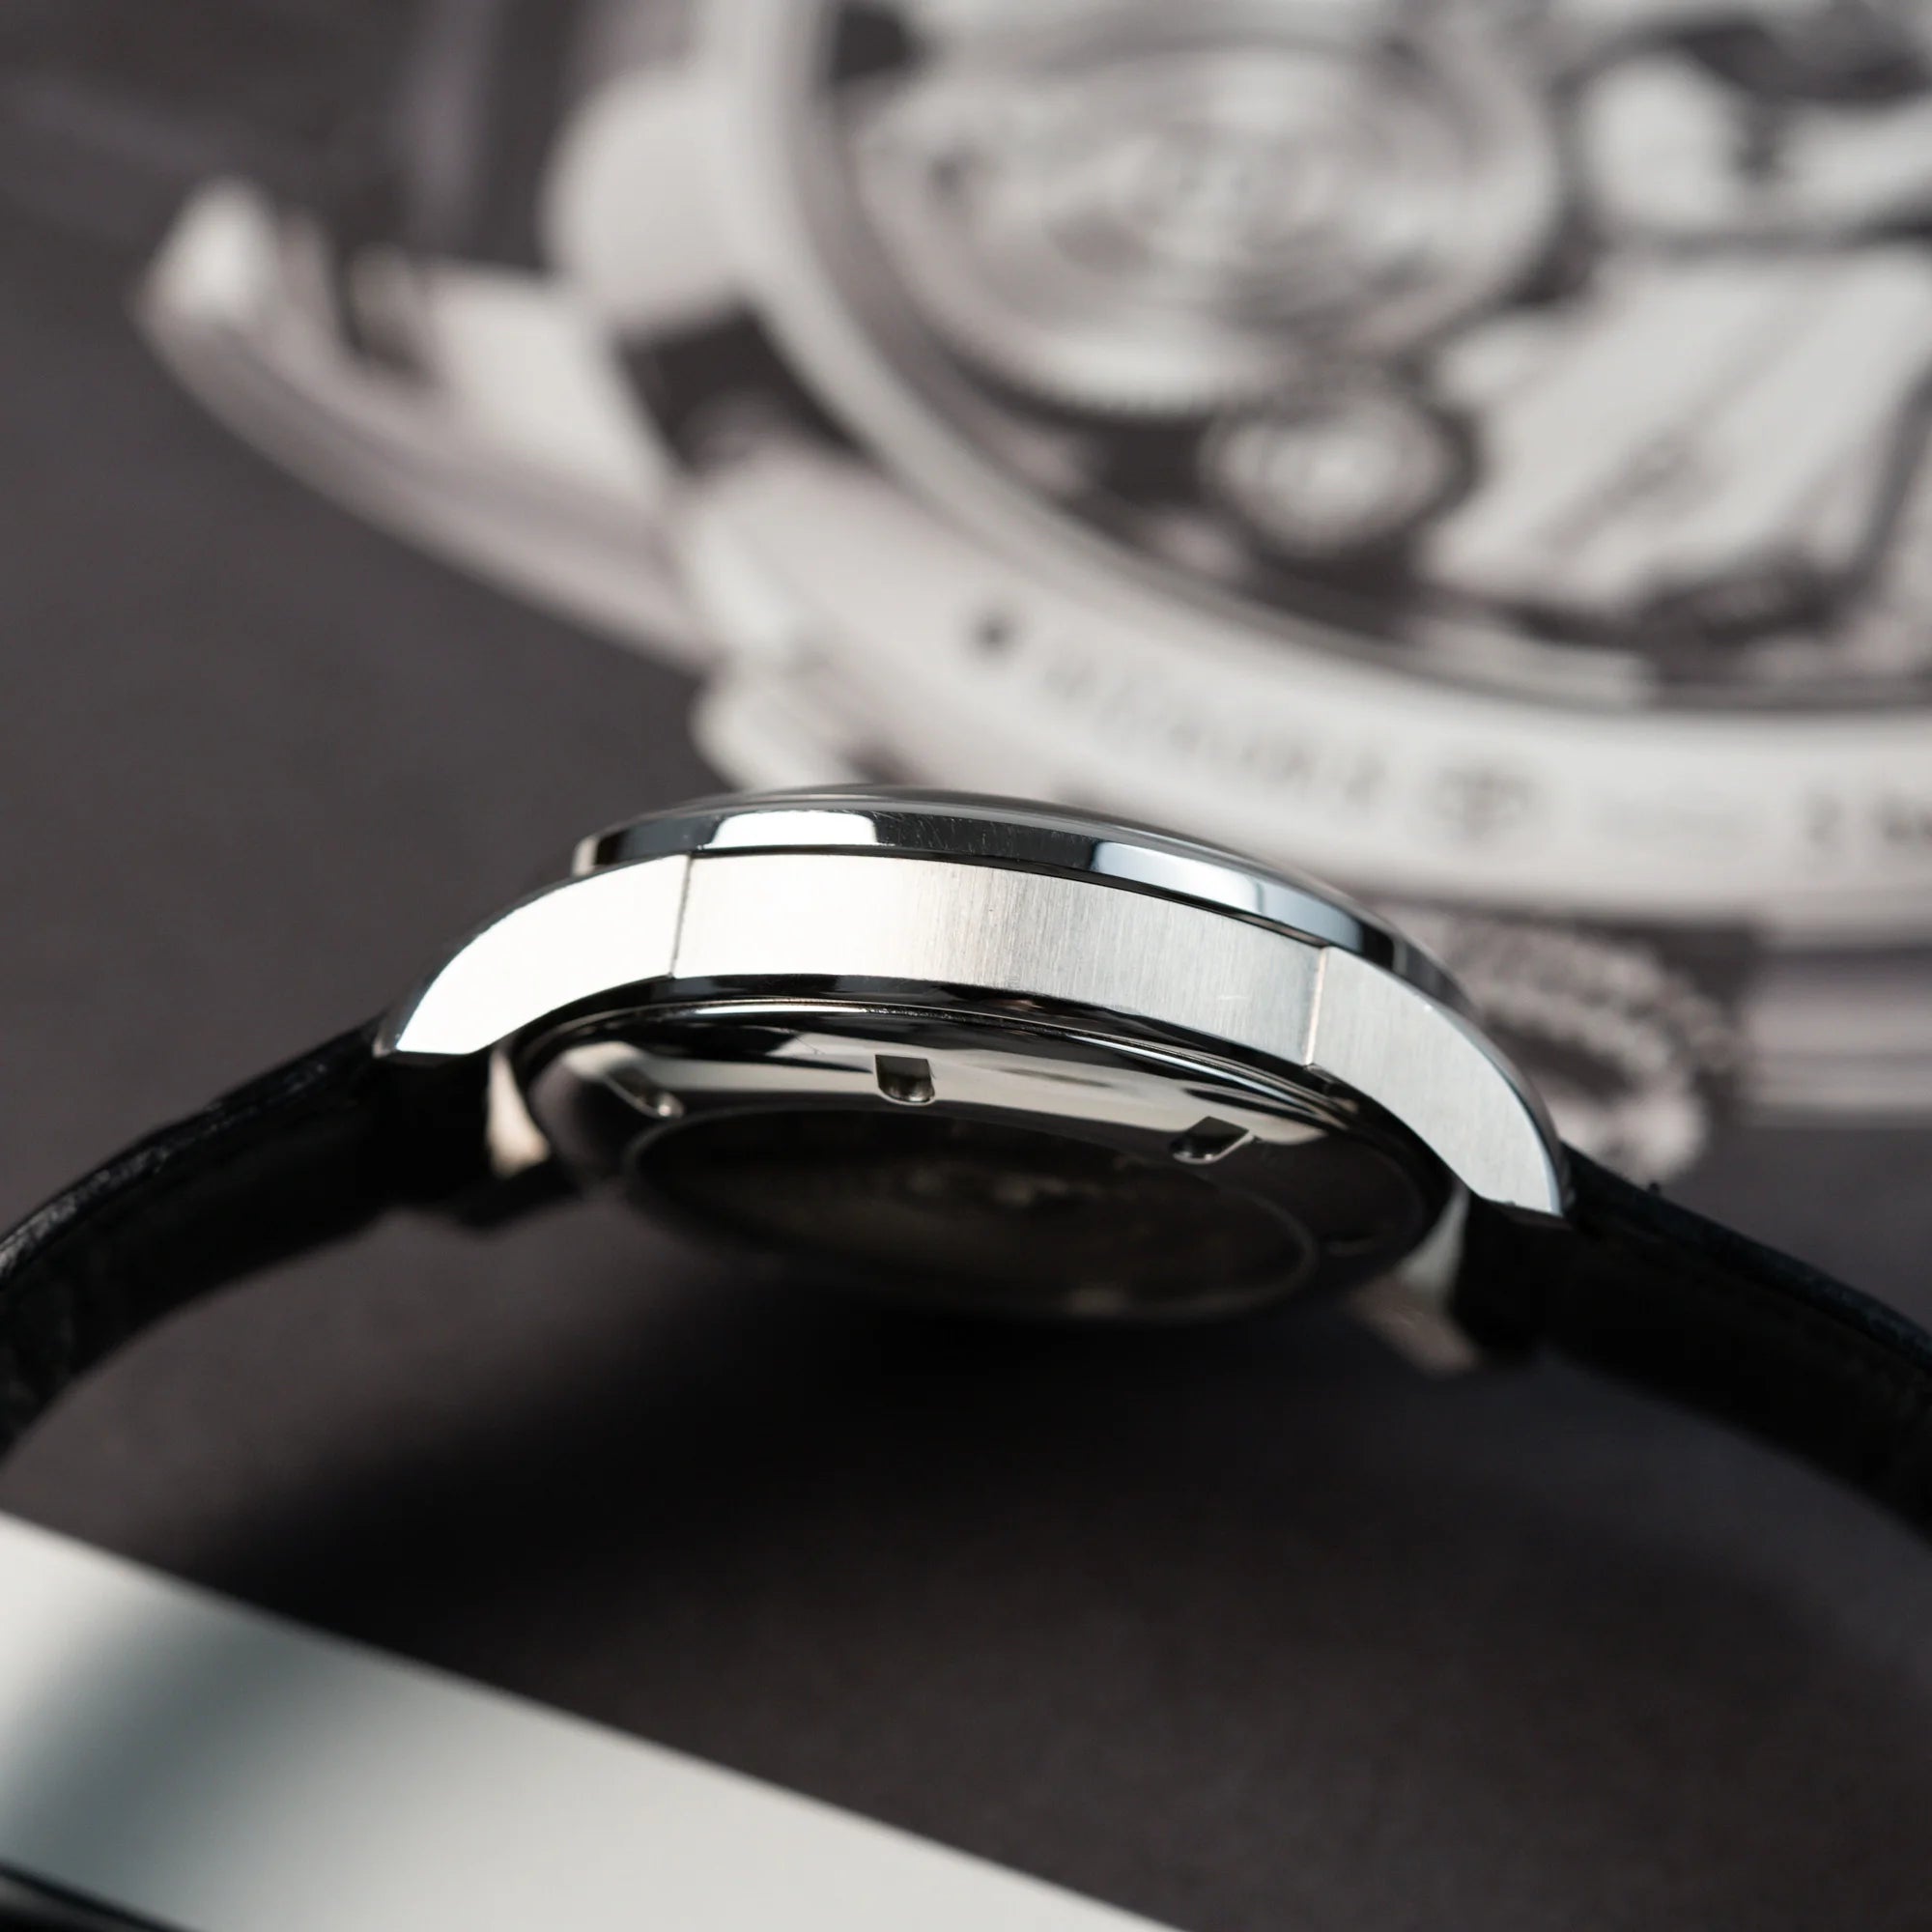 Produktfotografie des seitlichen Gehäuses der IWC Schaffhausen Uhr "Ingenieur" mit der Referenz IW323301 mit schwarzem Zifferblatt